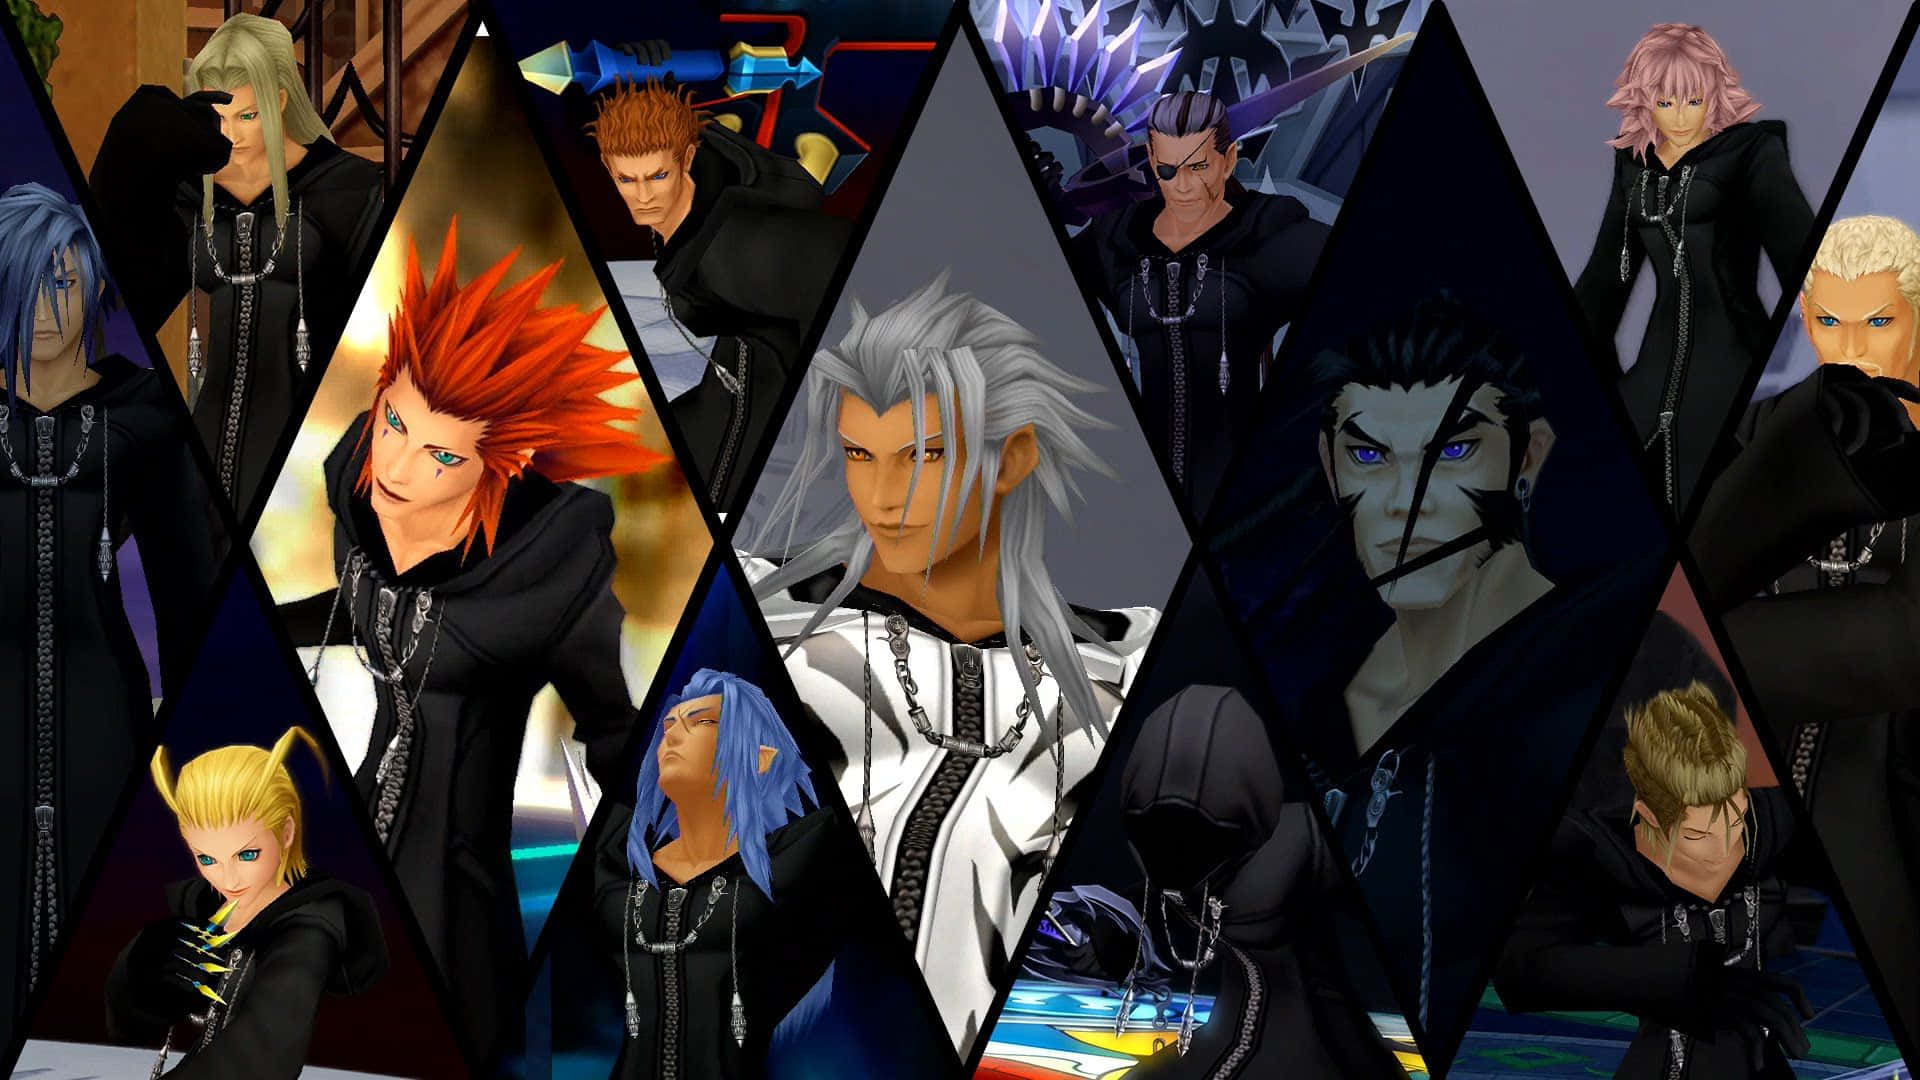 Laorganización Xiii De Kingdom Hearts Se Reúne En La Oscuridad, Unidos Por Sus Emblemáticos Abrigos Negros Con Capucha. Fondo de pantalla